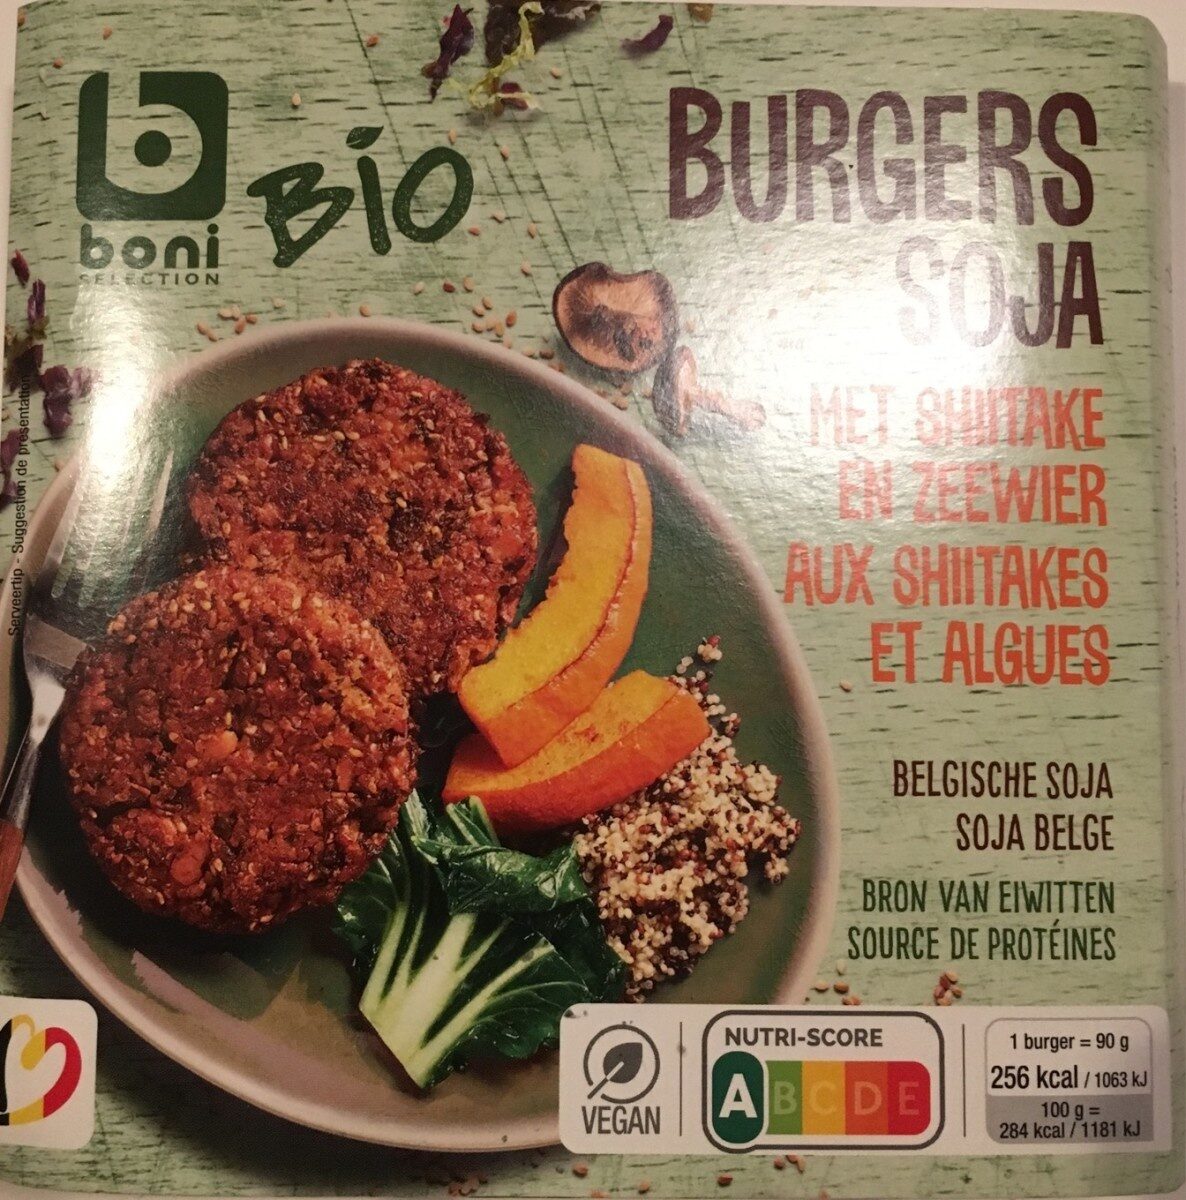 Burgers soja aux shiitakes et algues - Product - fr